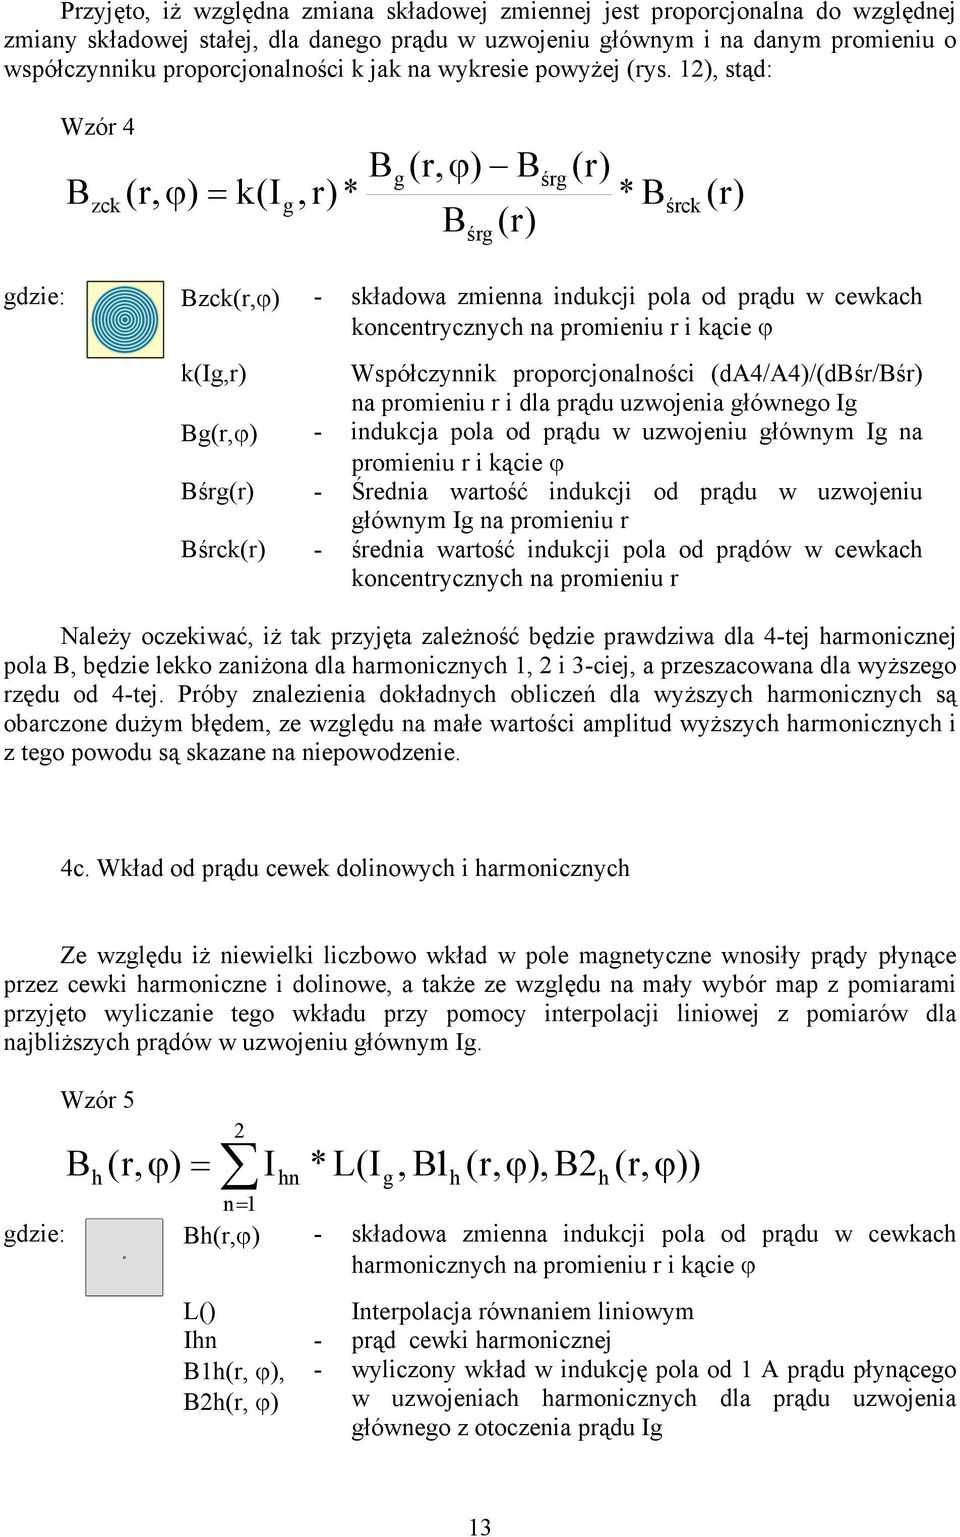 12), stąd: Wzór 4 B zck (r, ϕ) = k(i g B, r) * g (r, ϕ) B B śrg (r) śrg (r) * B śrck (r) gdzie: Bzck(r,ϕ) - składowa zmienna indukcji pola od prądu w cewkach koncentrycznych na promieniu r i kącie ϕ